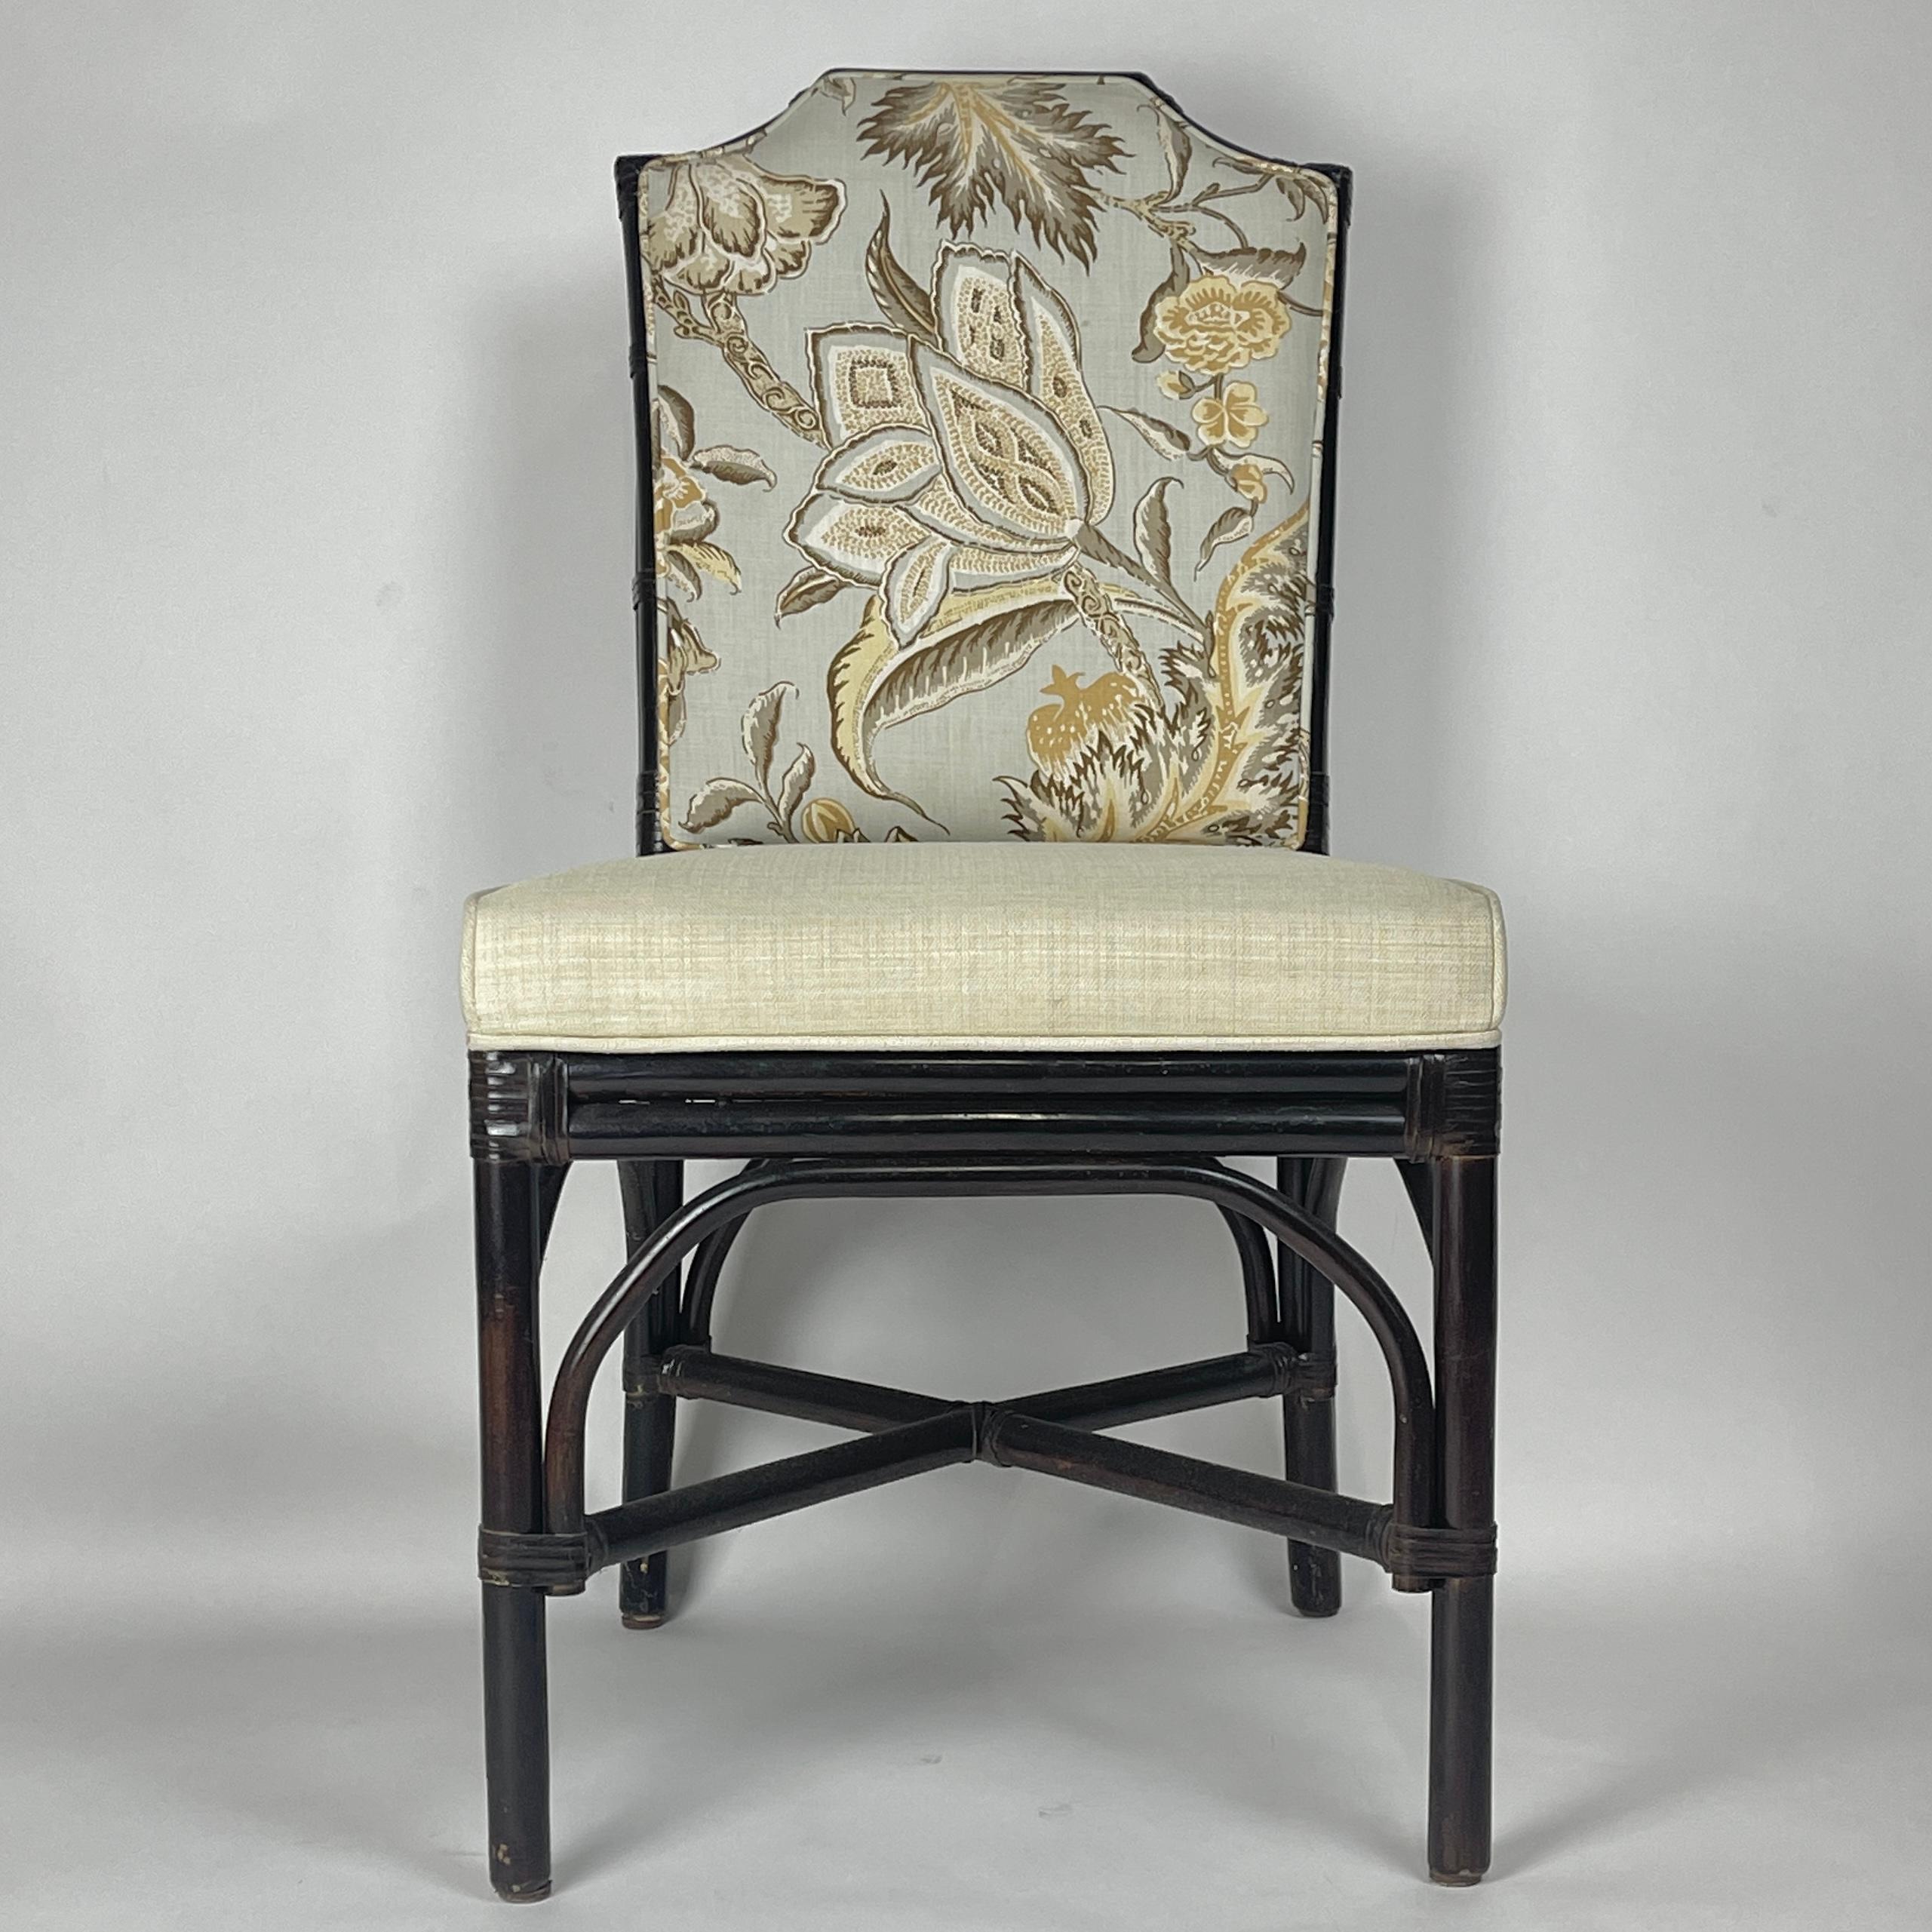 Ensemble de 6 superbes chaises de salle à manger de style Art Déco chinois en chinoiserie ébonisée, avec une tapisserie à la fois belle et robuste. Ces chaises sont solides et parfaites pour un usage quotidien.
Cette offre concerne 6 chaises. Nous